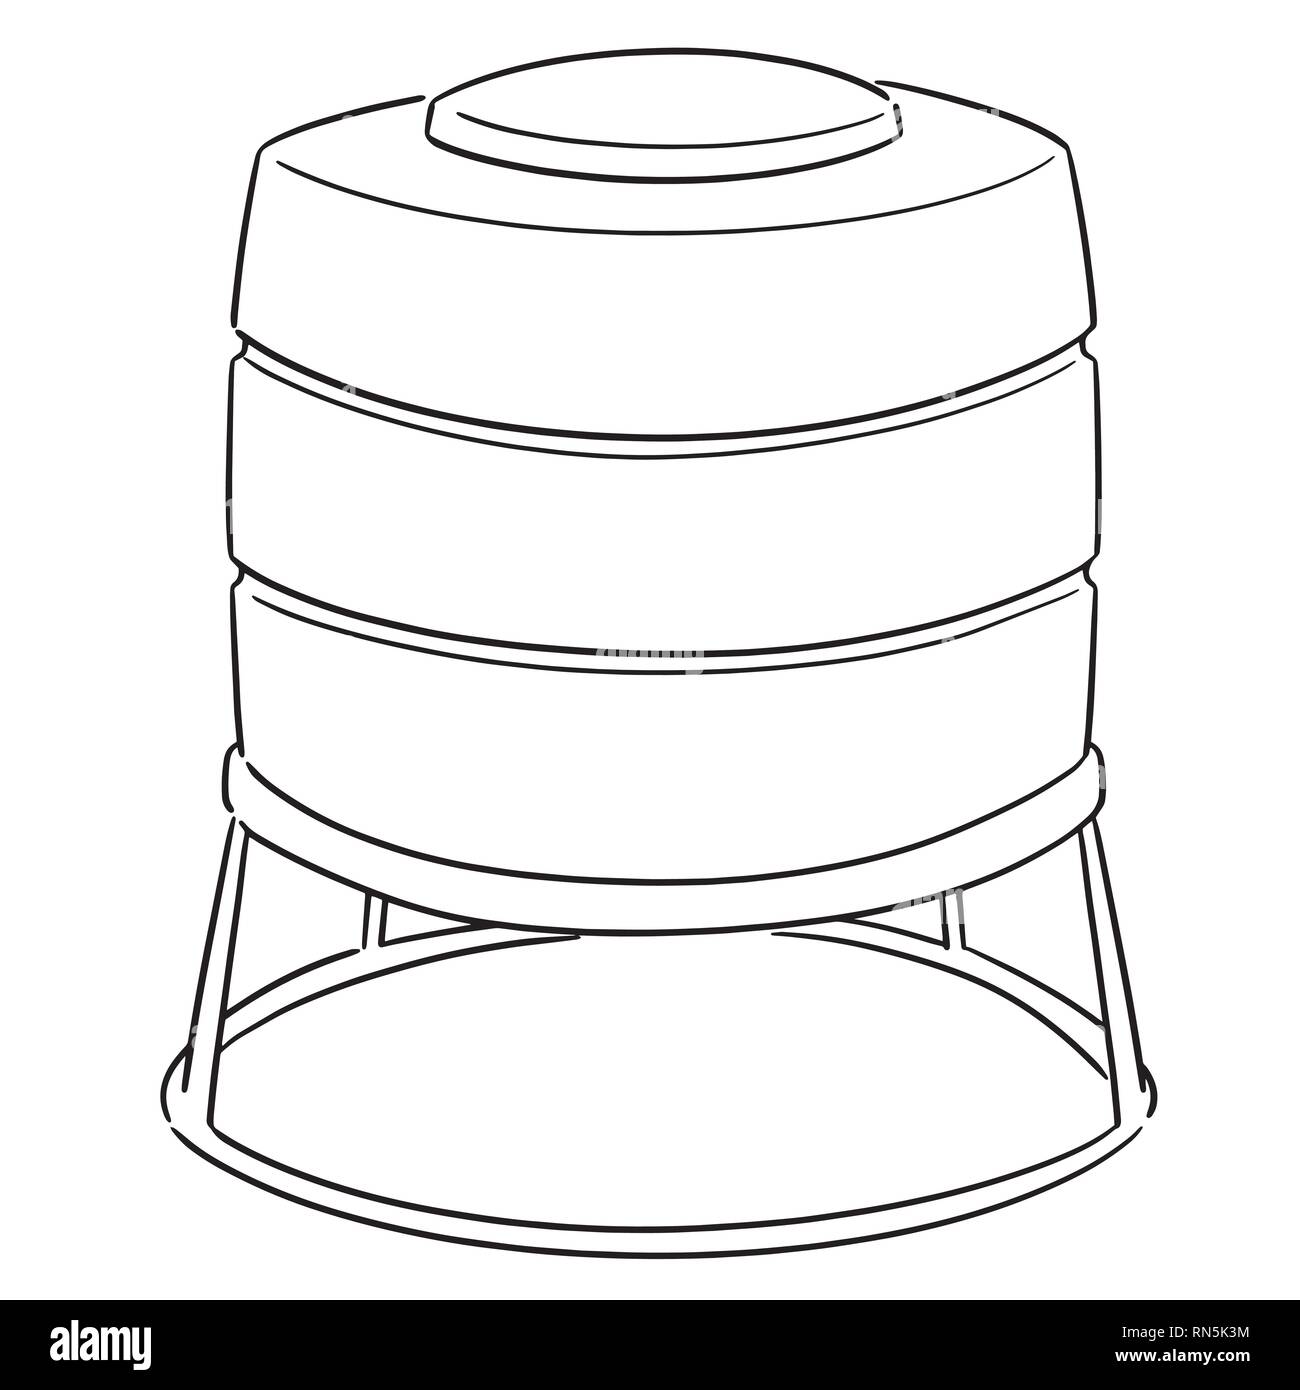 Water Tank Cartoon Vector Illustration Black Stock Vector Royalty Free  313678403  Shutterstock